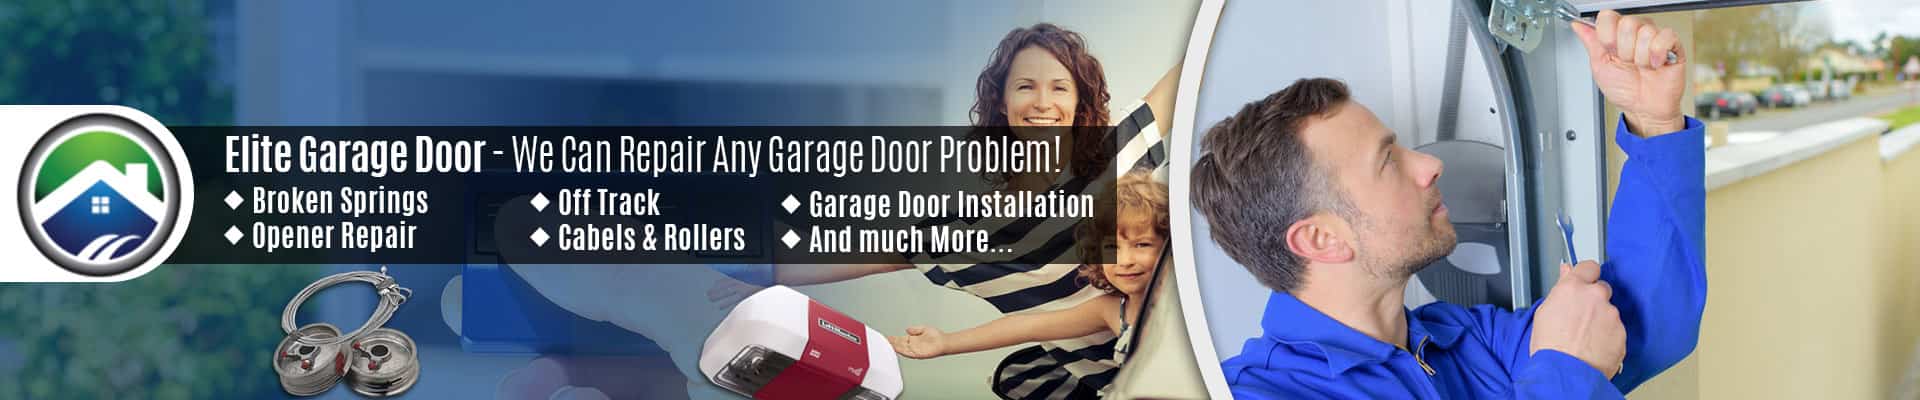 Garage Door Repair Service Arlington – Elite Garage Door of Fidalgo Island